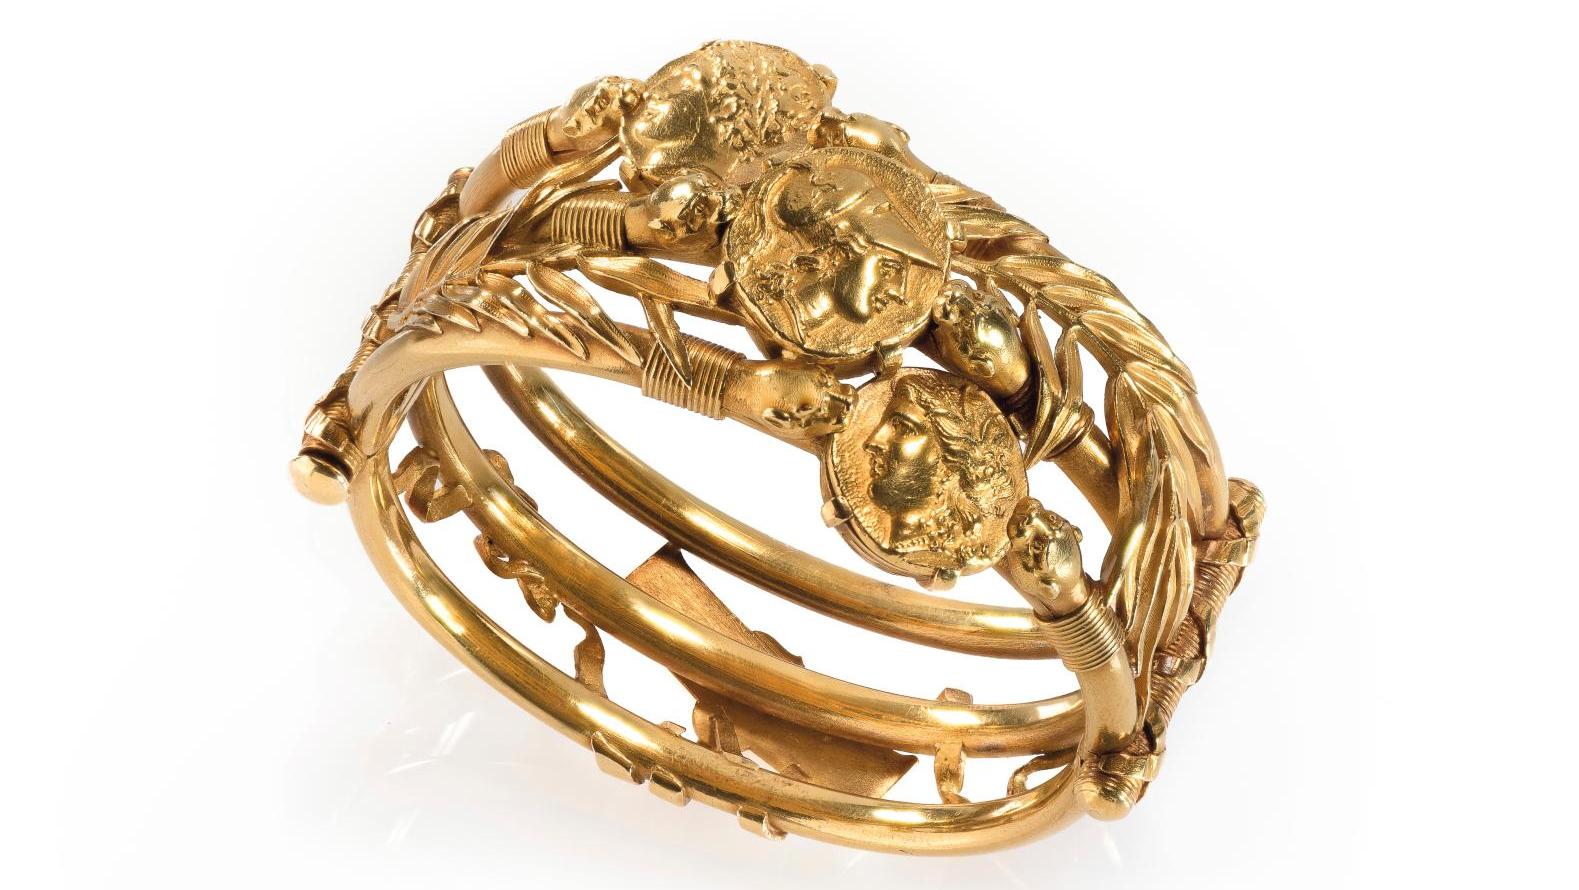 Lucien Falize (1839-1897) et Germain Bapst (1853-1921), bracelet rigide en or jaune... Bracelet de Falize et Bapst, entre joaillerie et numismatique